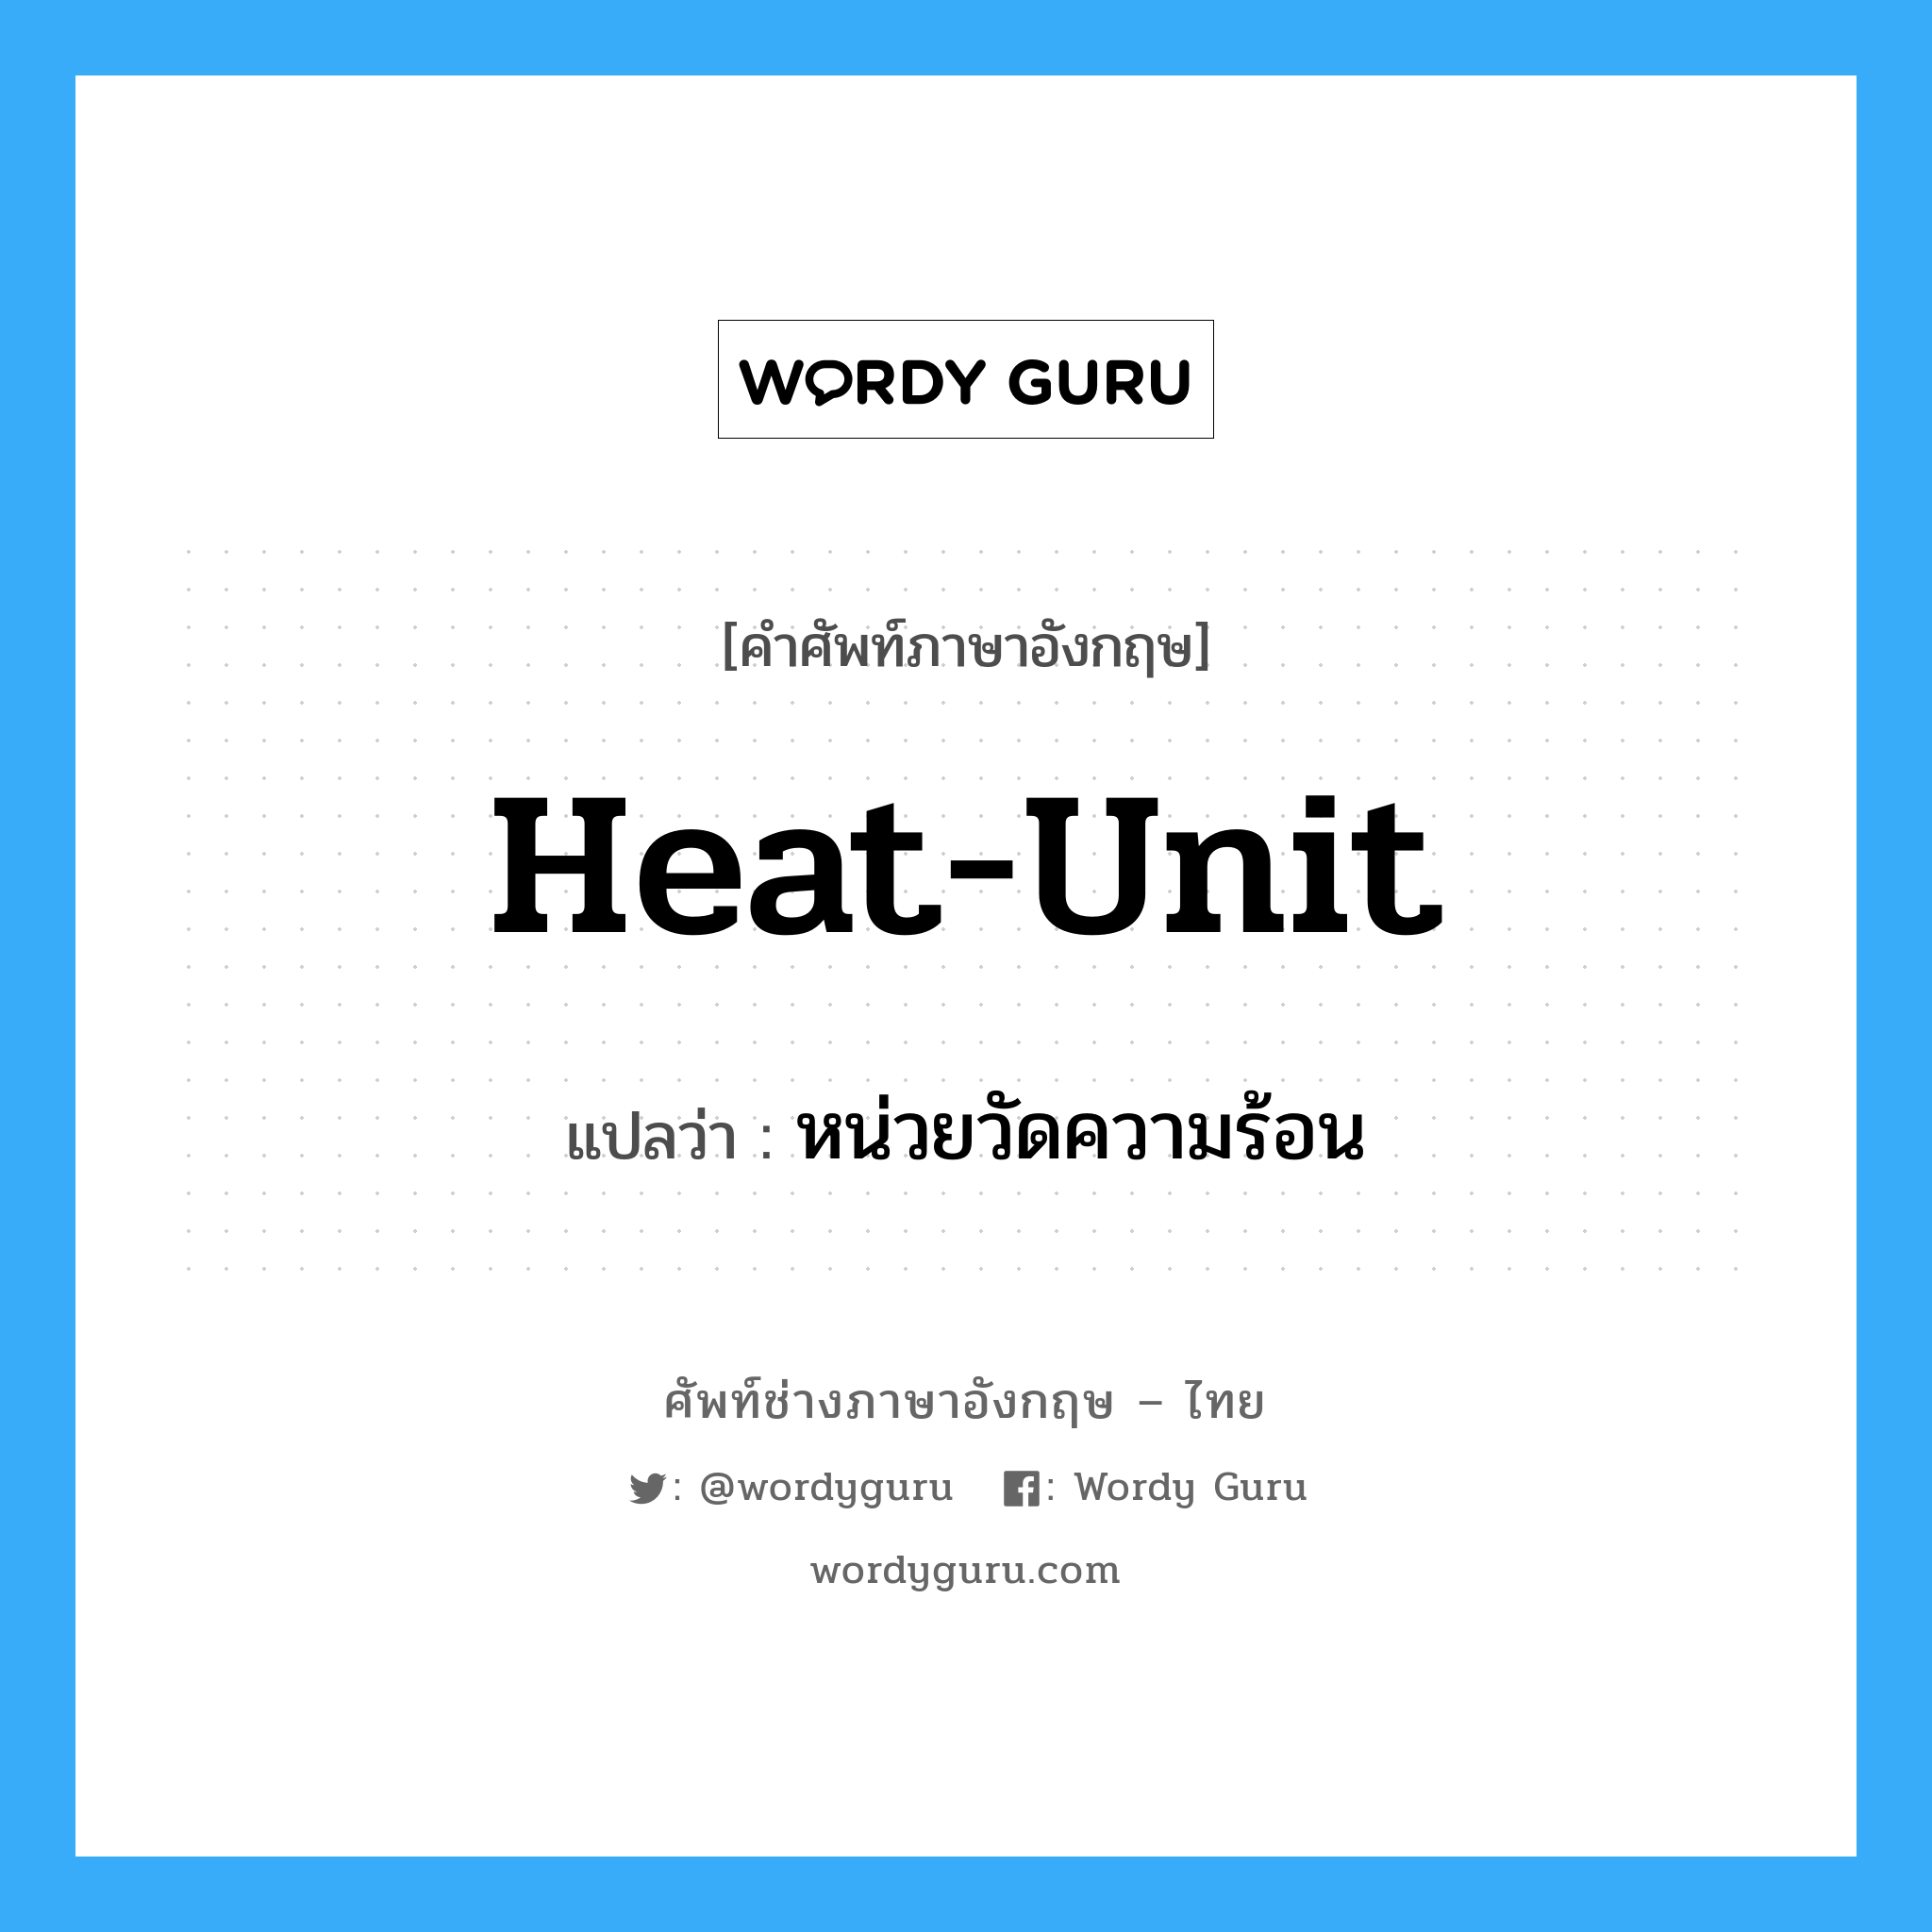 หน่วยวัดความร้อน ภาษาอังกฤษ?, คำศัพท์ช่างภาษาอังกฤษ - ไทย หน่วยวัดความร้อน คำศัพท์ภาษาอังกฤษ หน่วยวัดความร้อน แปลว่า heat-unit